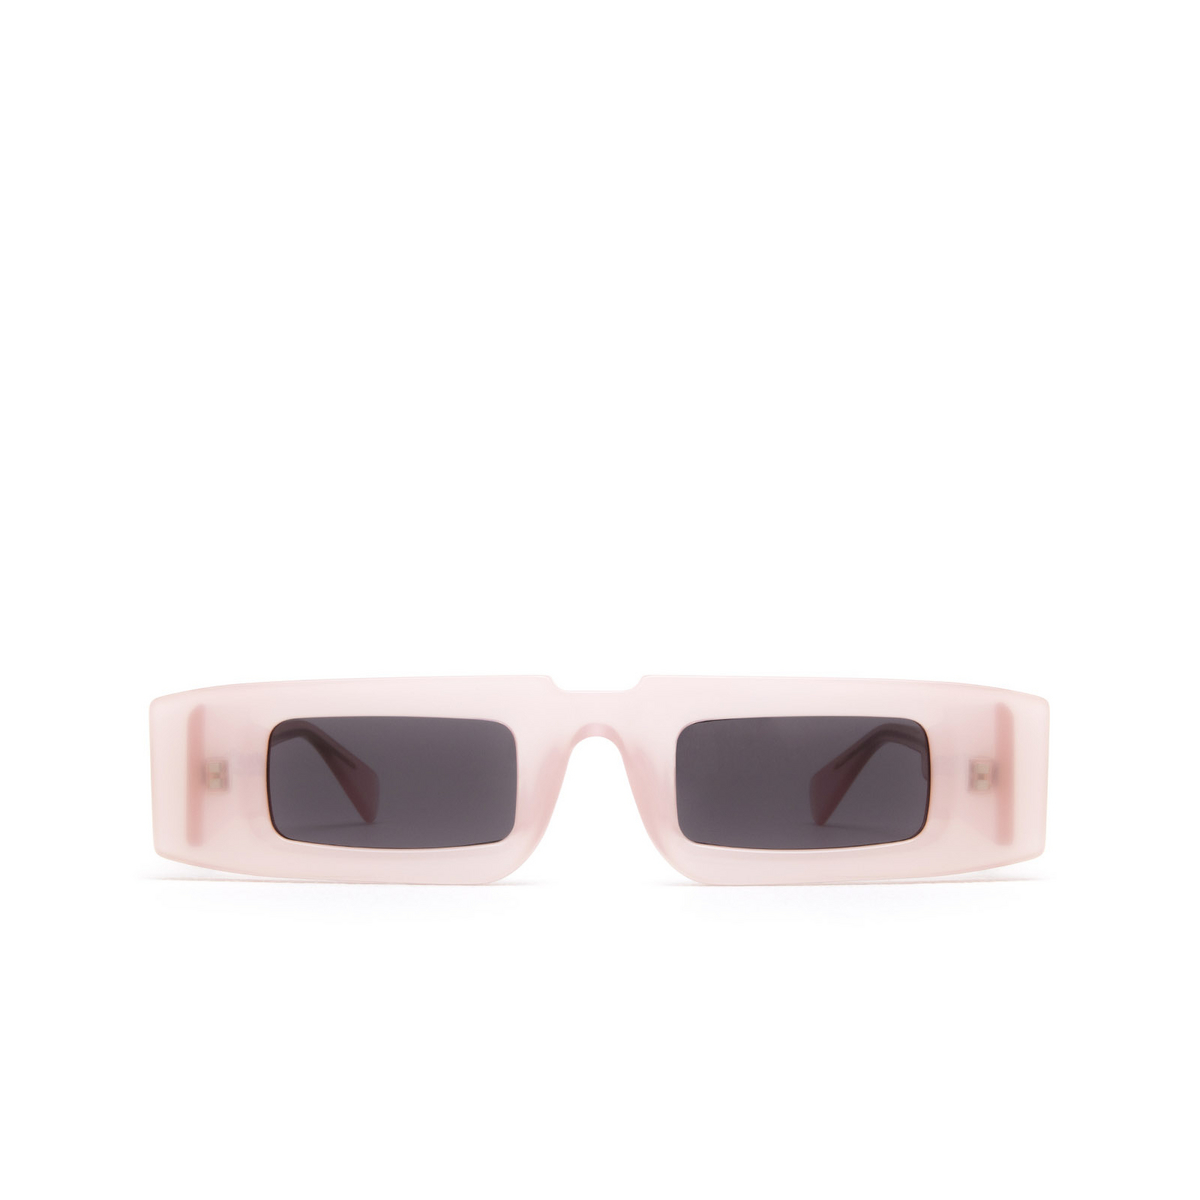 Kuboraum® Rectangle Sunglasses: X5 color Pink Lemonade Pkl - front view.